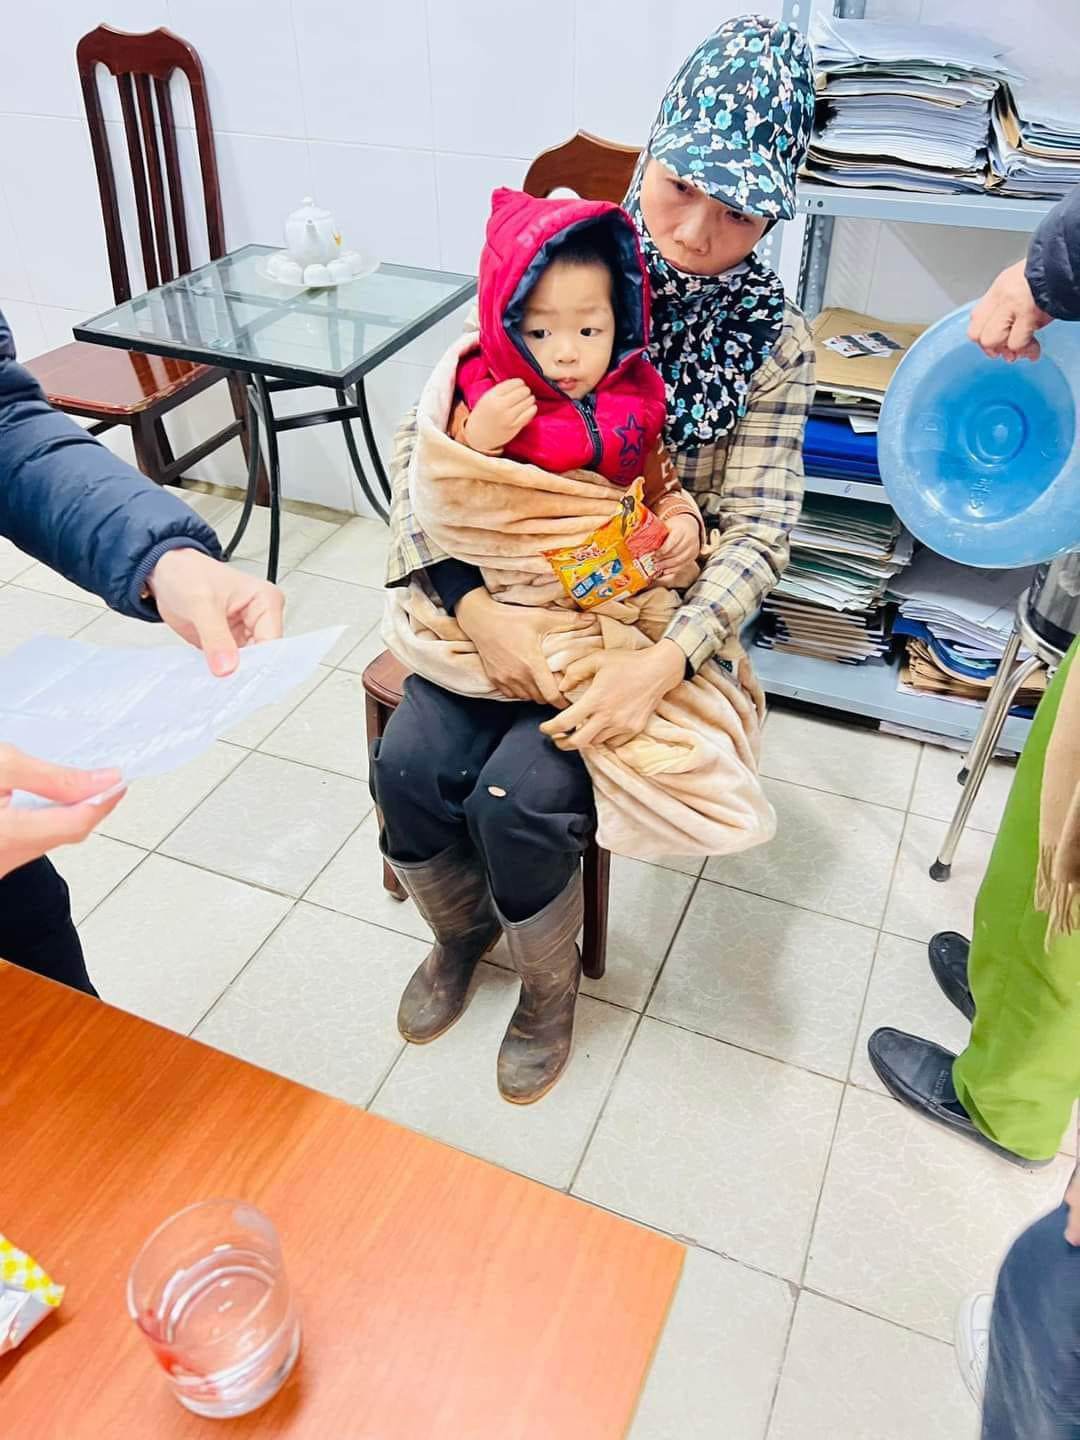 Cháu bé bị bỏ rơi được đưa về chính quyền xã Võng Xuyên (huyện Phúc Thọ, Hà Nội)